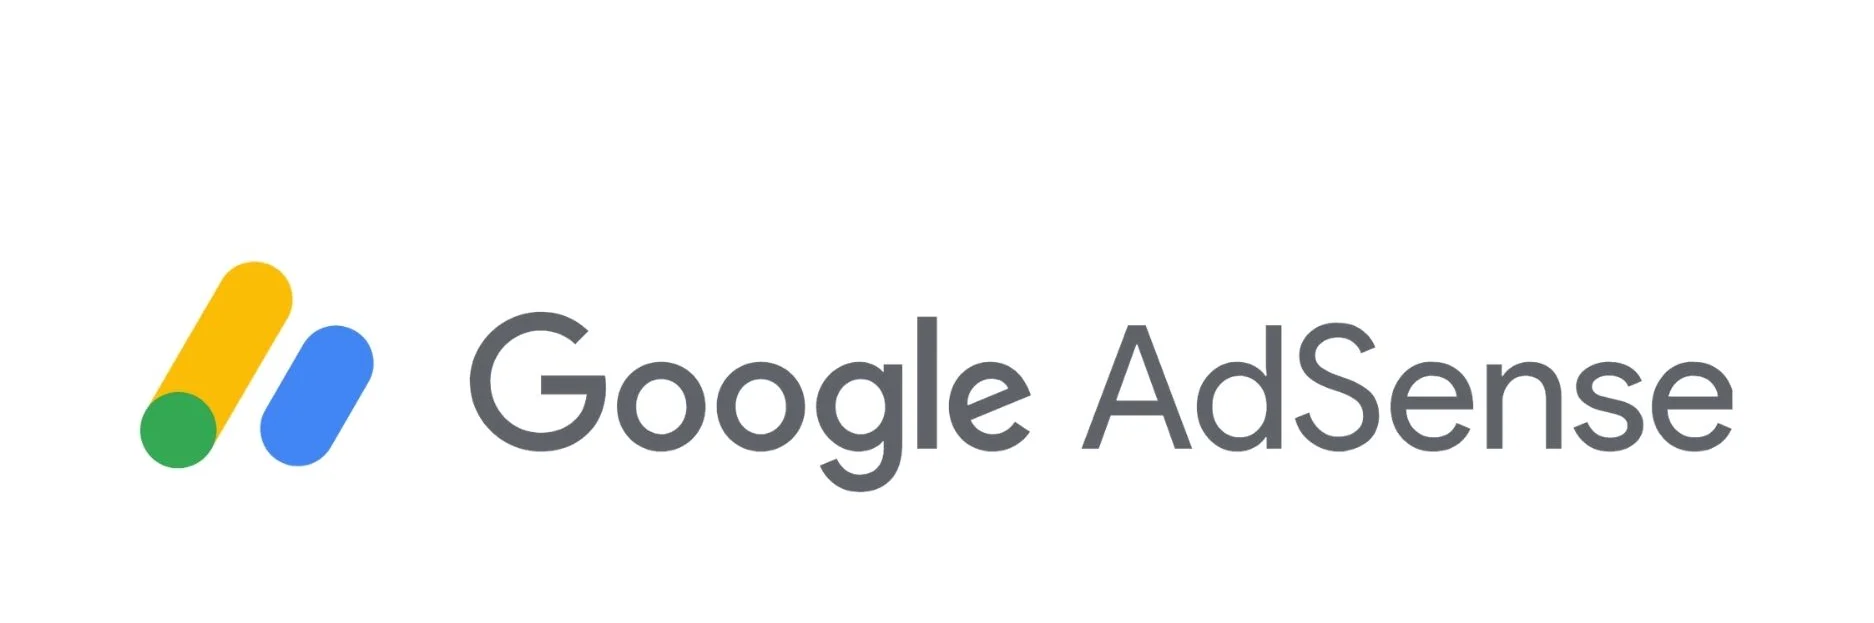 ¿Qué es Google adsense?